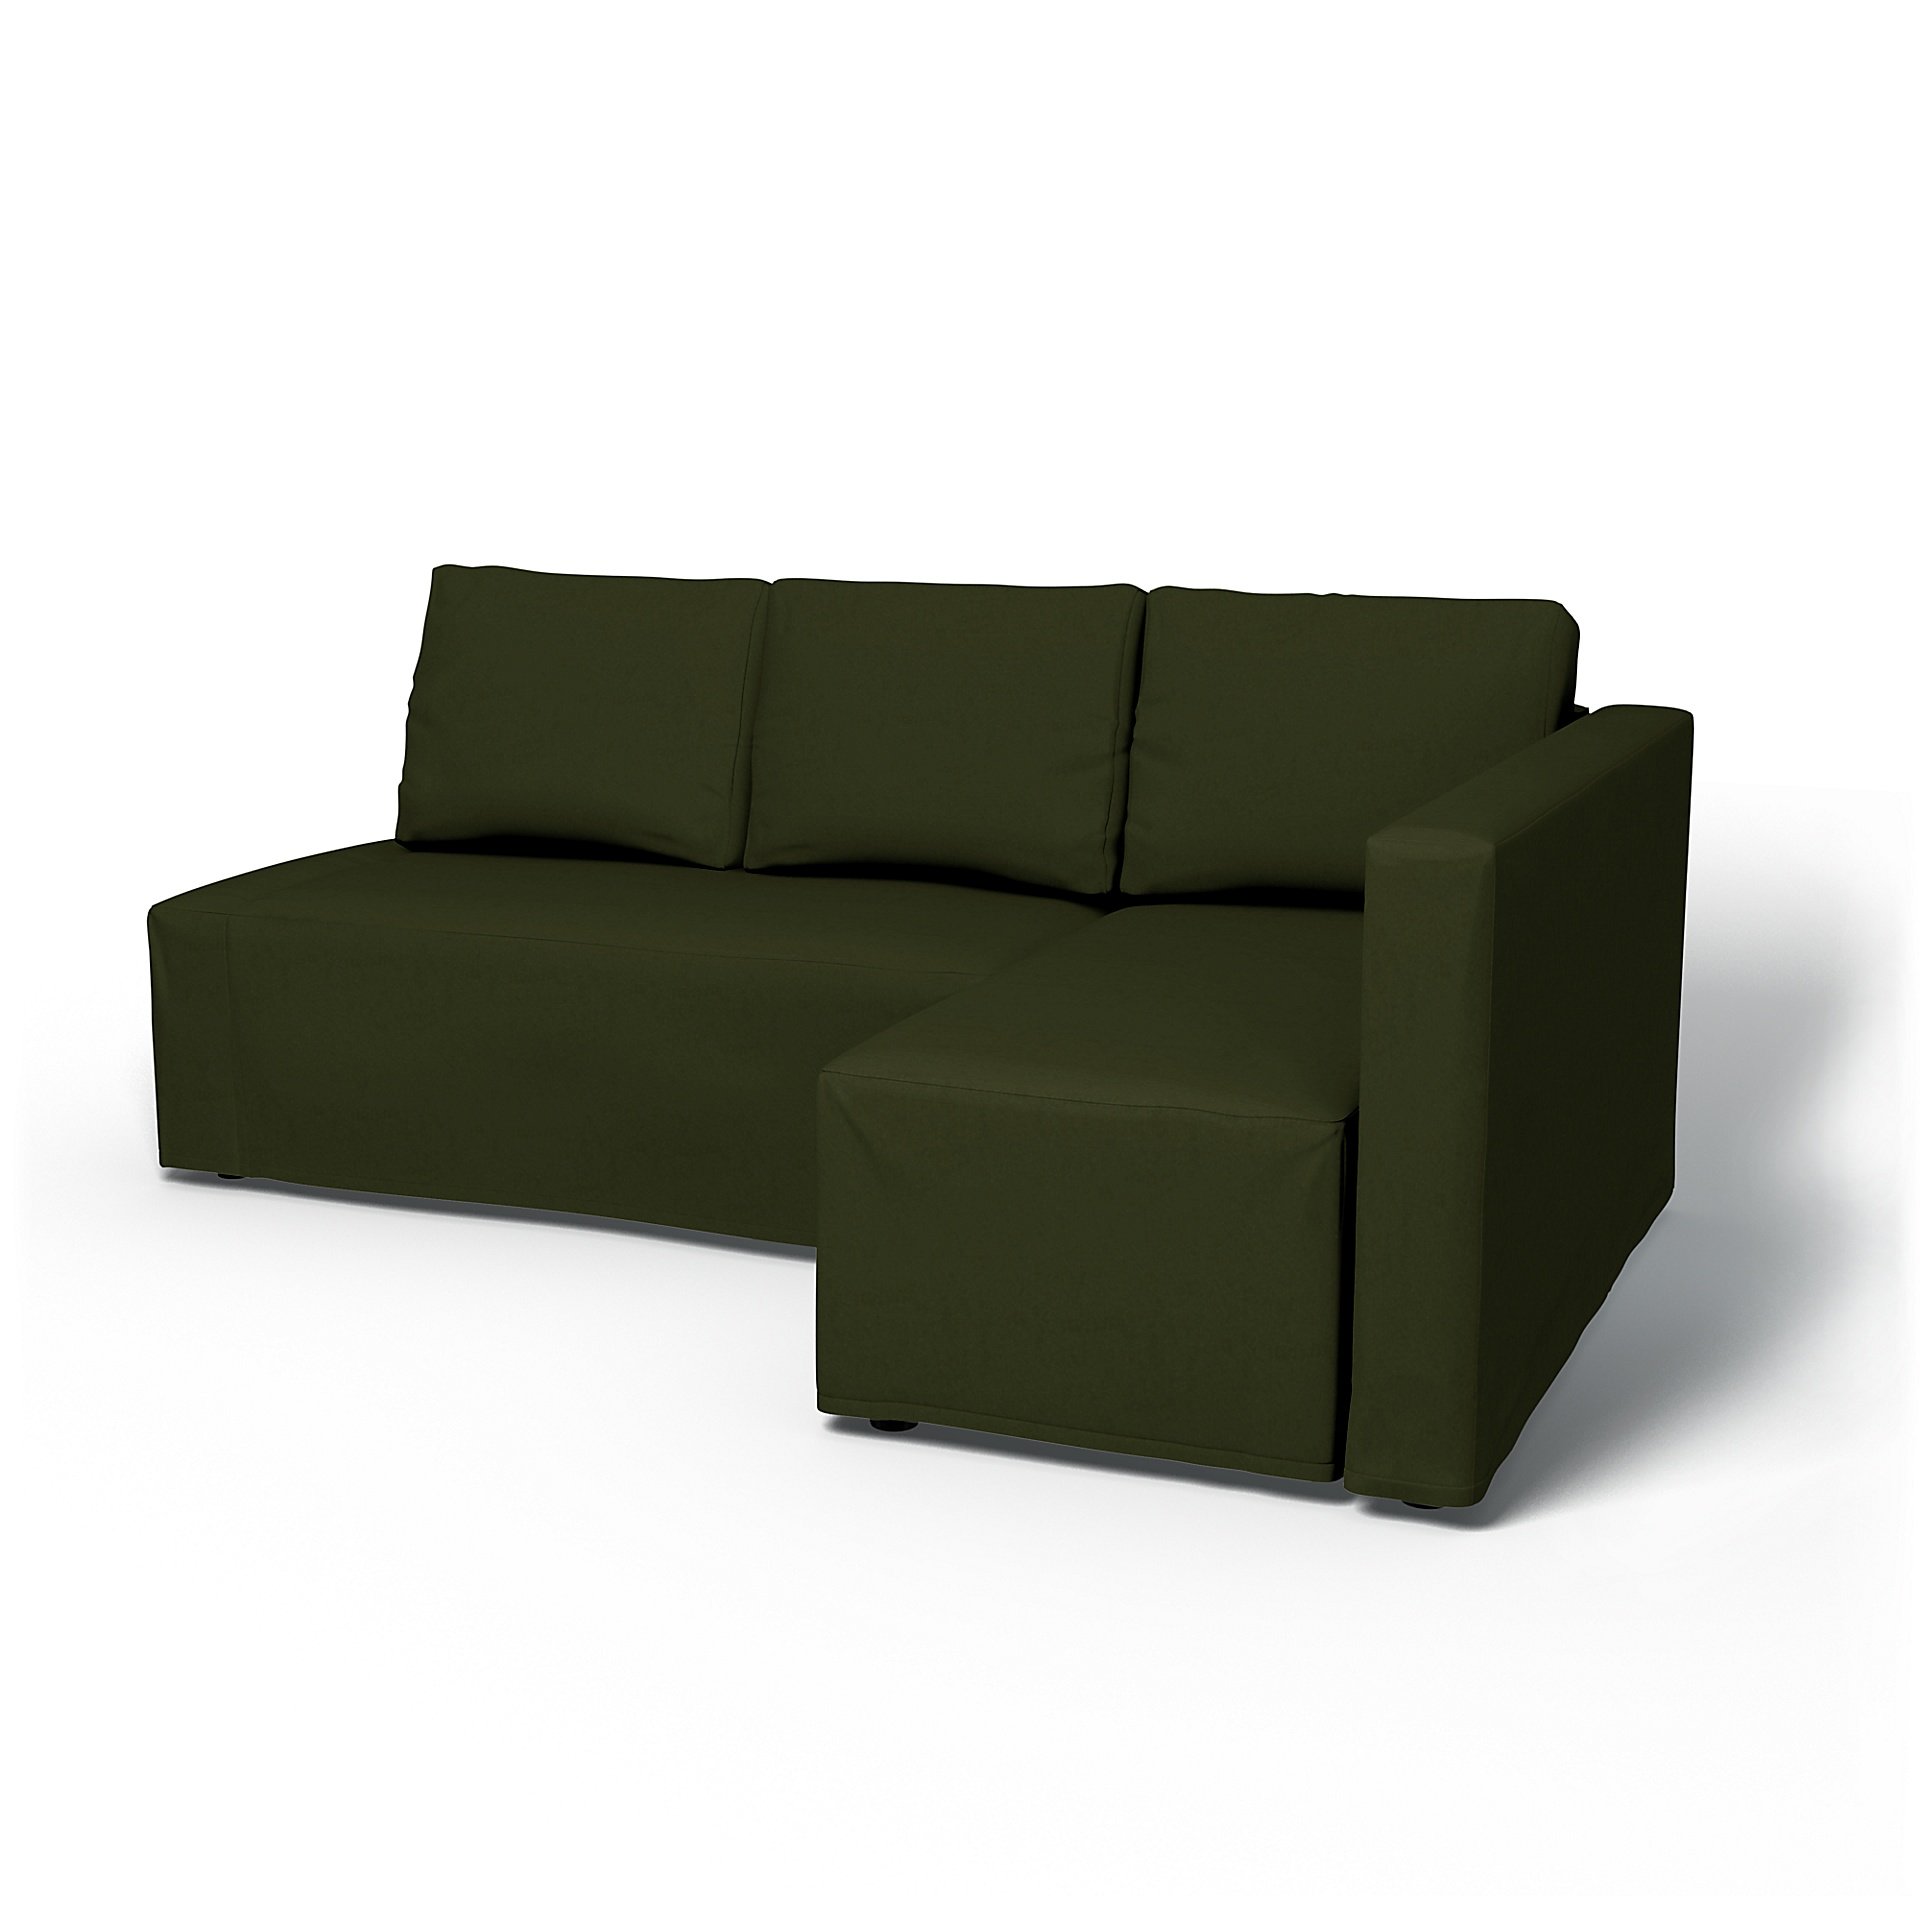 IKEA - Friheten Sofa Bed with Right Chaise Cover, Moss, Velvet - Bemz